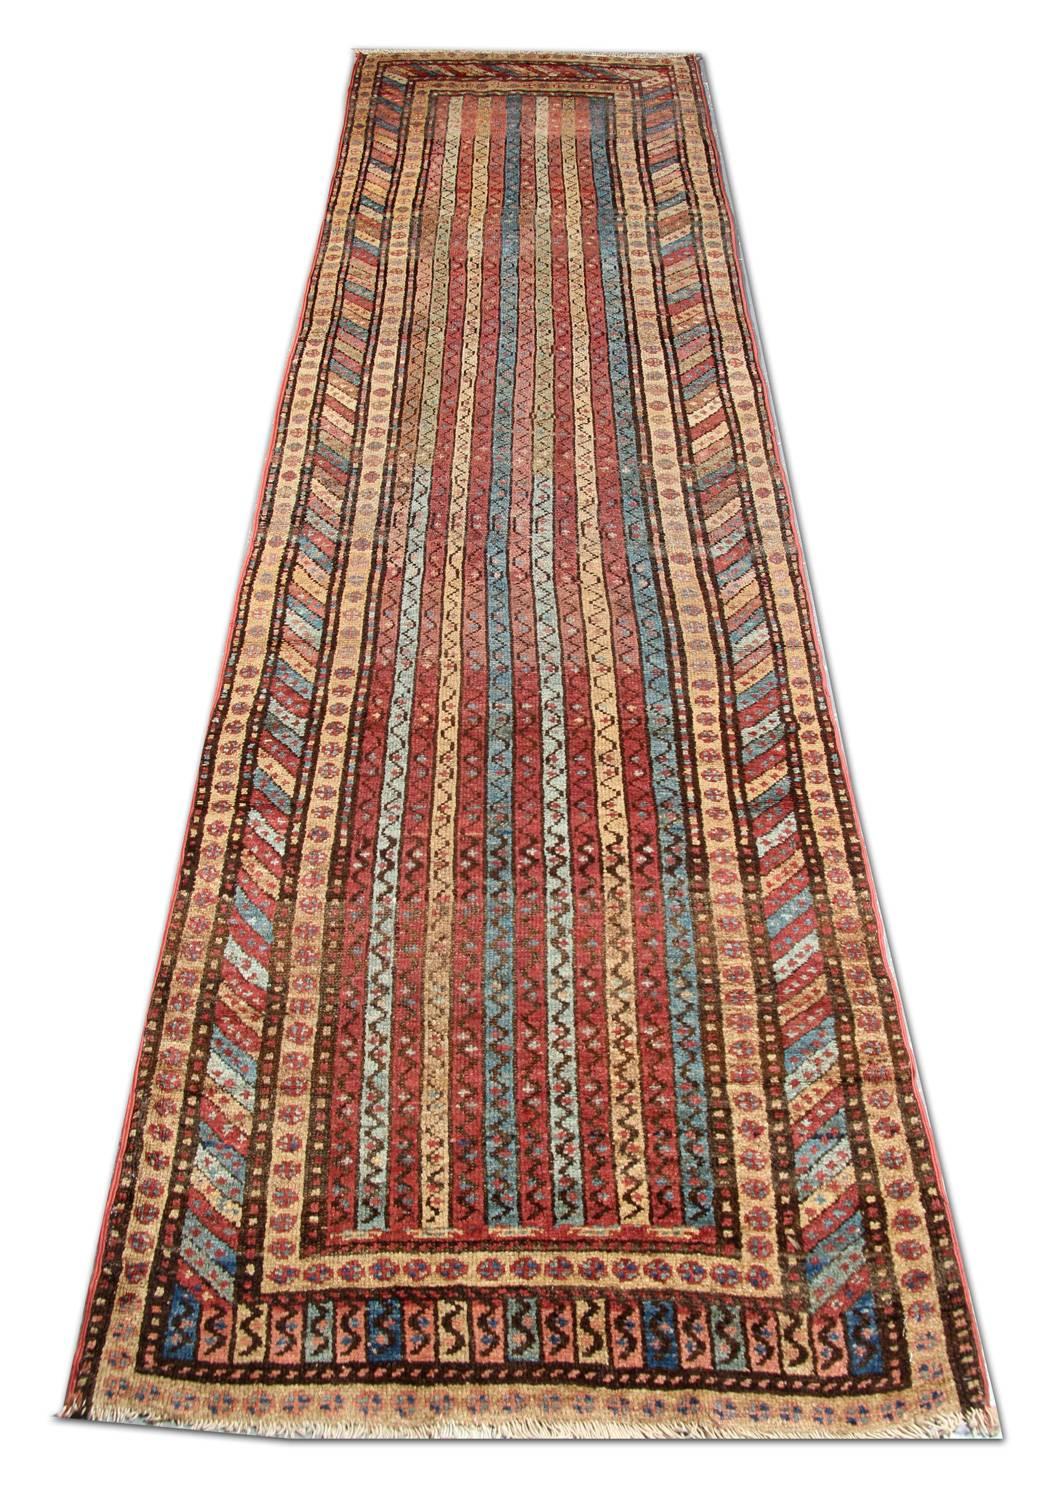 Tapis oriental fait main Né des tapis traditionnels nomades, ce tapis rayé antique de Shirvan présente un spectaculaire ensemble de rayures modulaires et de motifs de bordures classiques qui ont un graphisme linéaire dans Tapis. Le champ chaud et